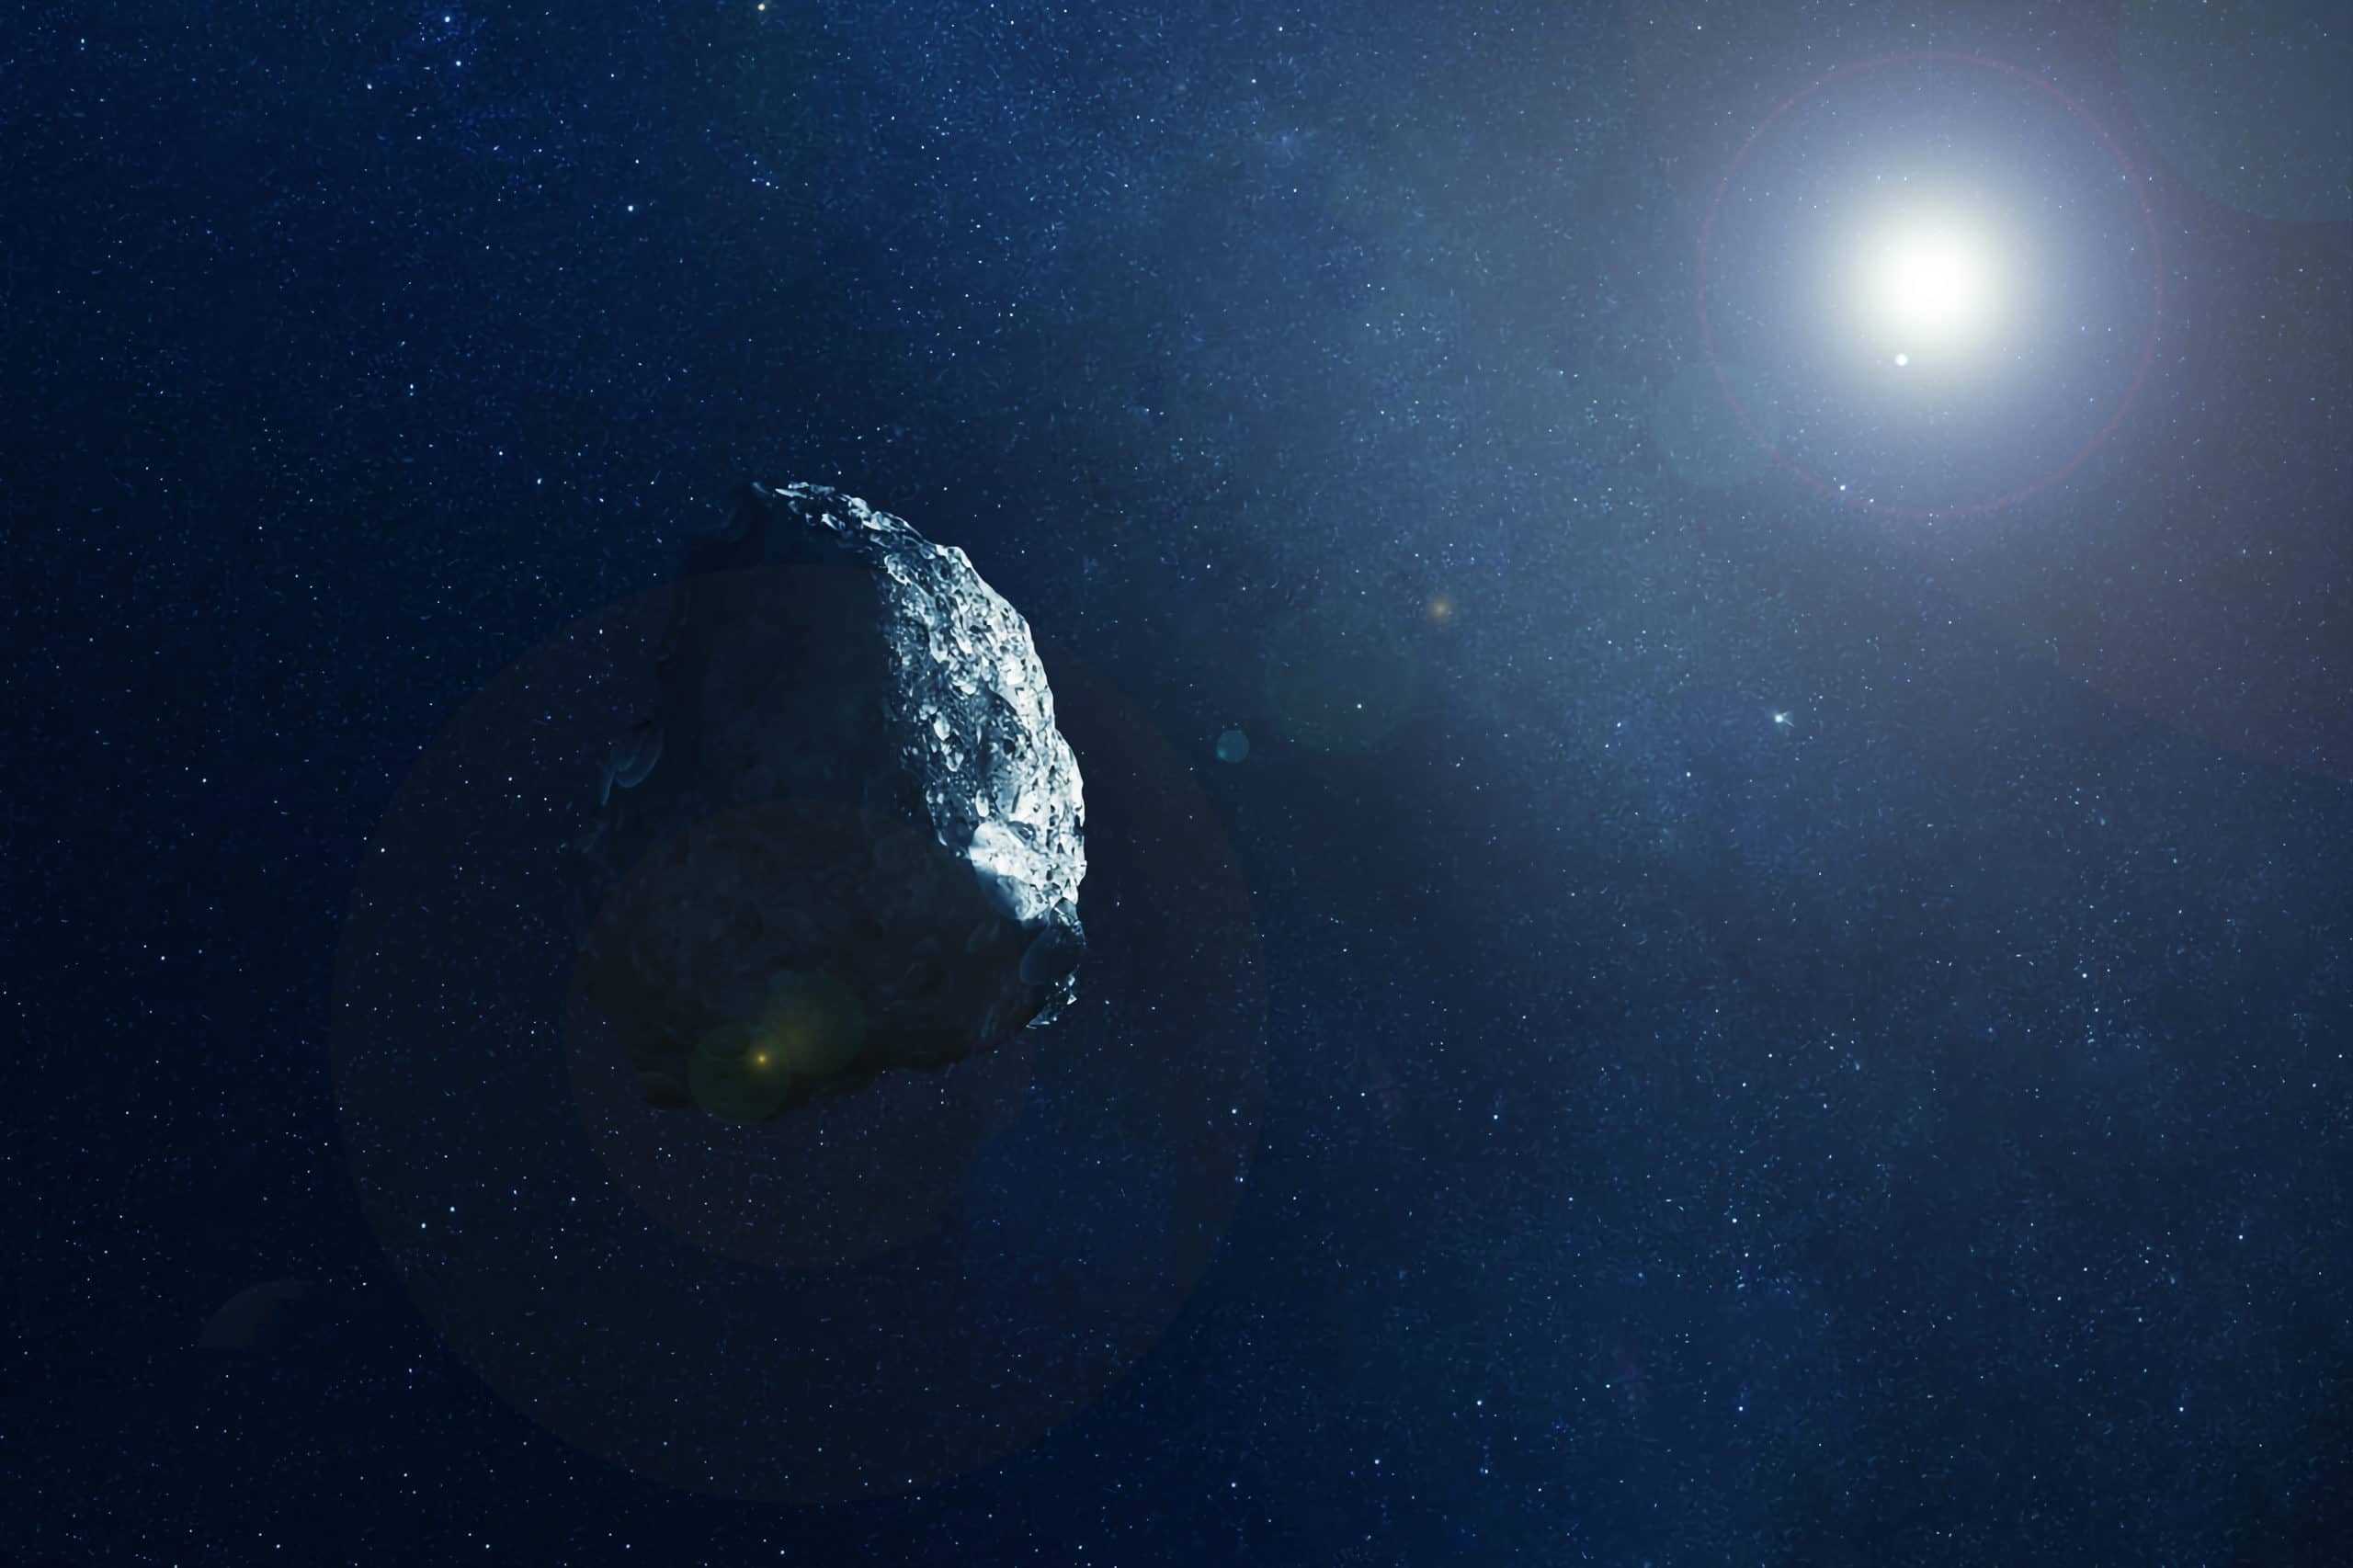 Asteroide pasara cerca de la tierra